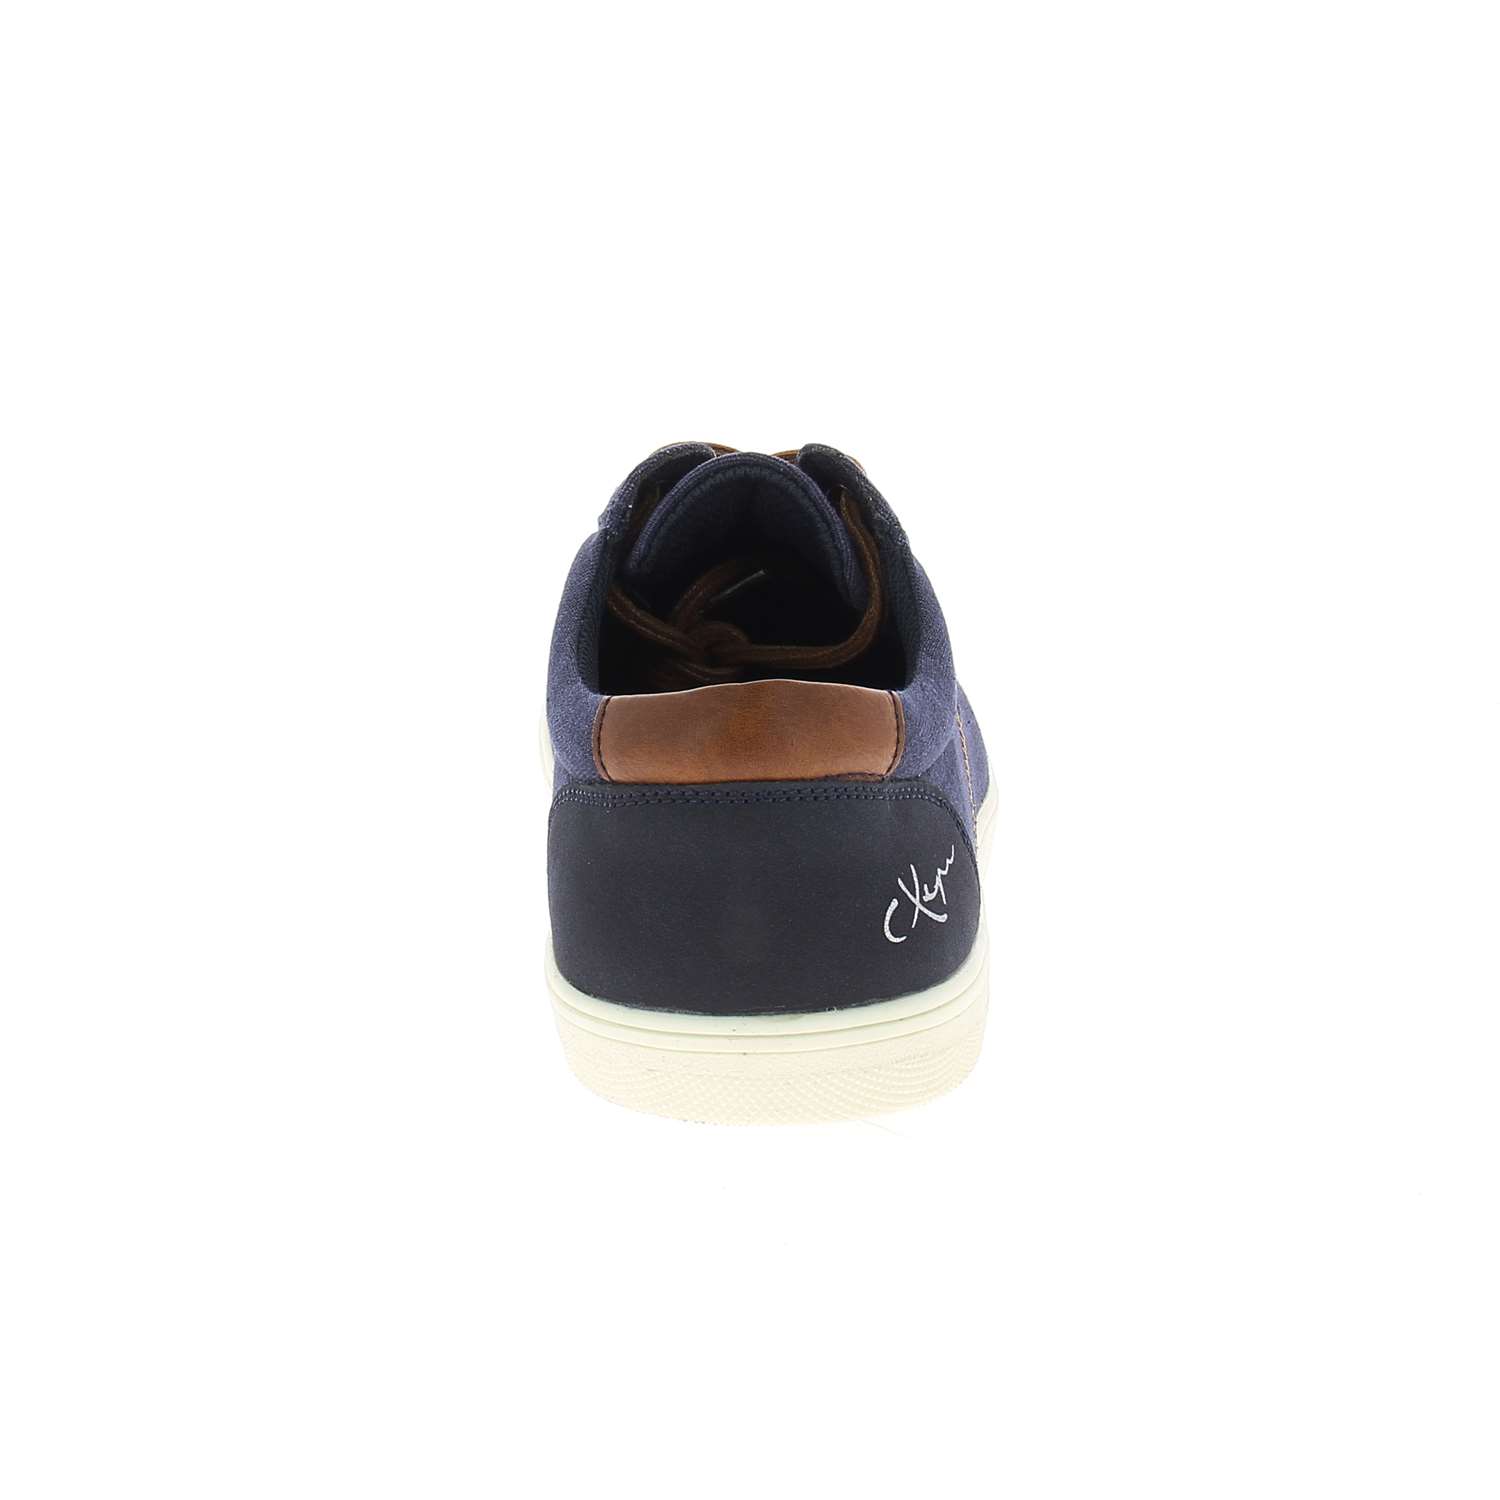 04 - KERTAC - XAPI - Chaussures à lacets - Synthétique